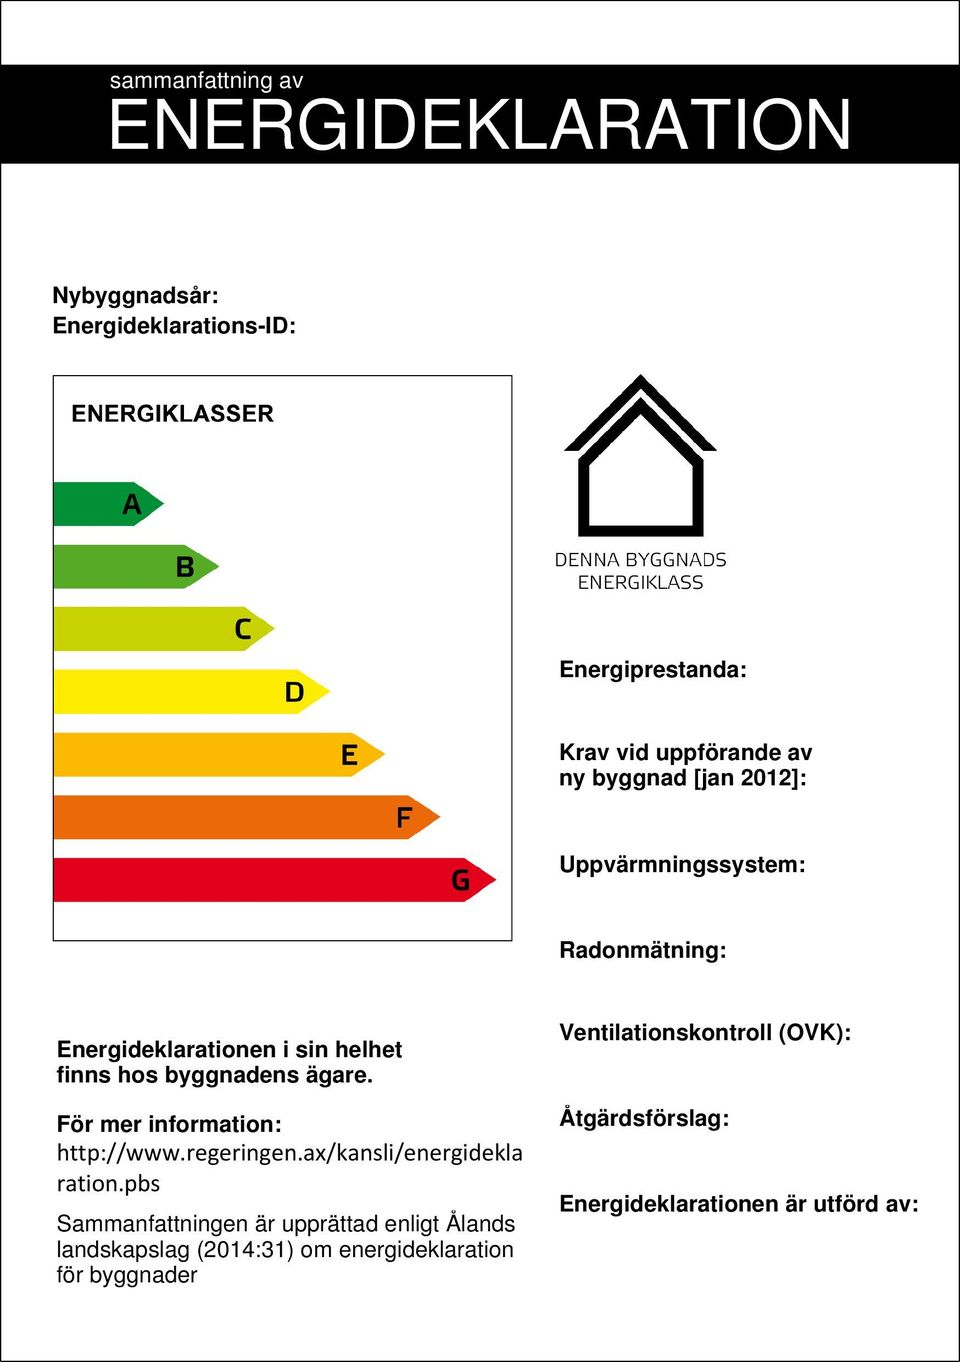 För mer information: http://www.regeringen.ax/kansli/energidekla ration.